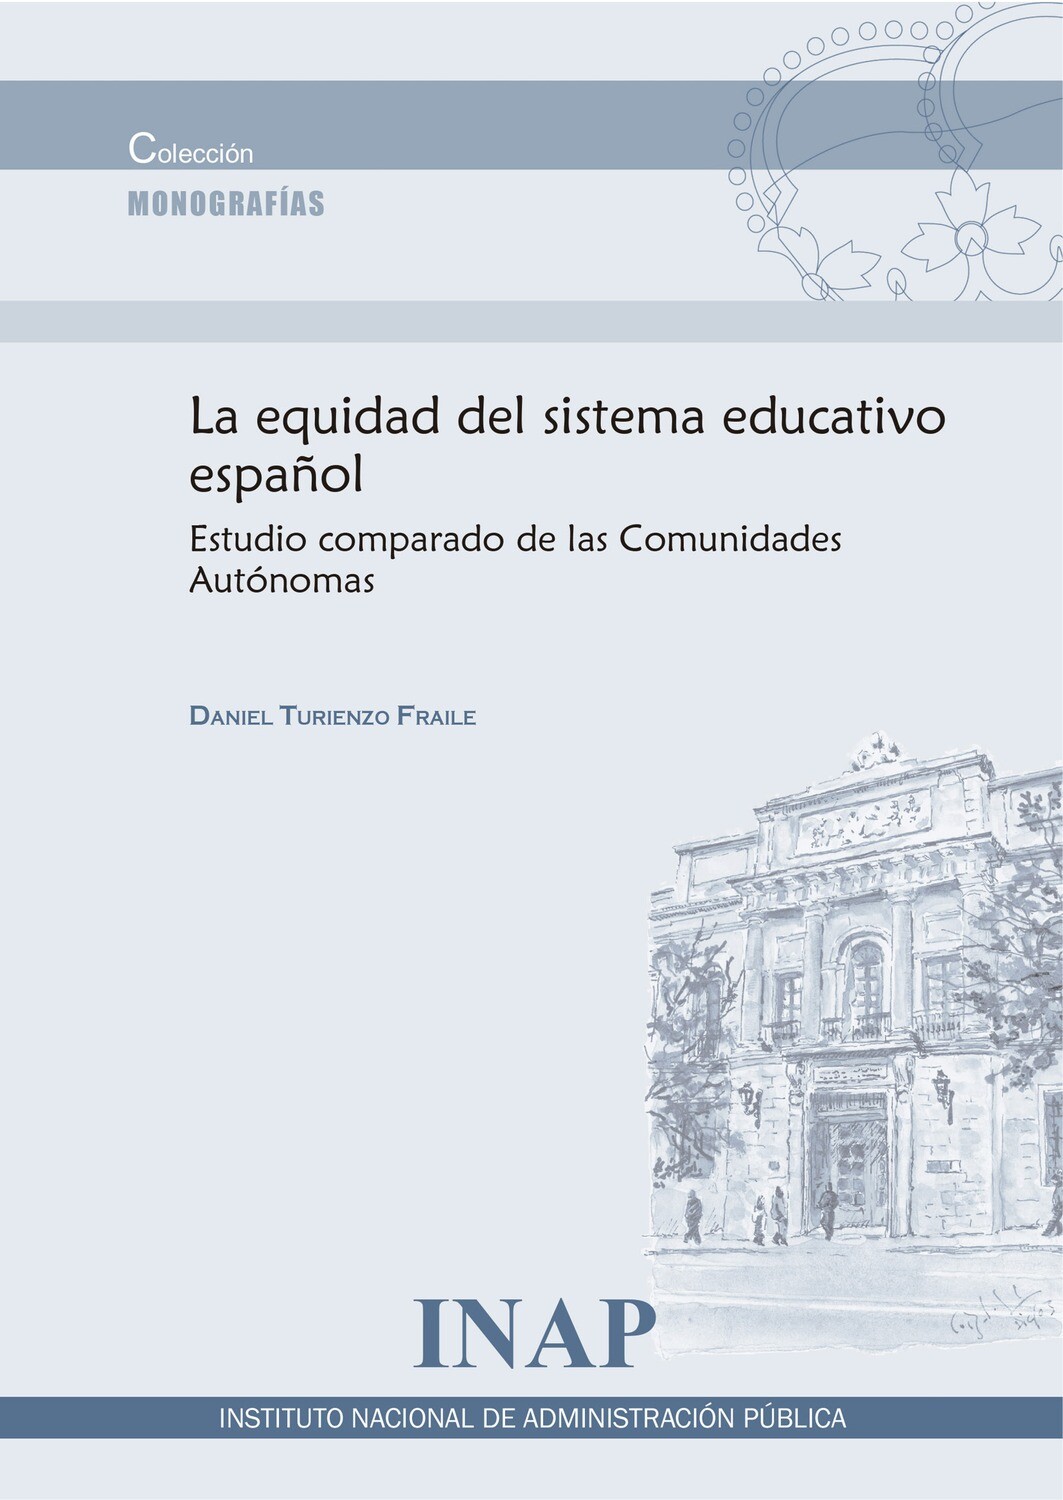 La equidad del sistema educativo español